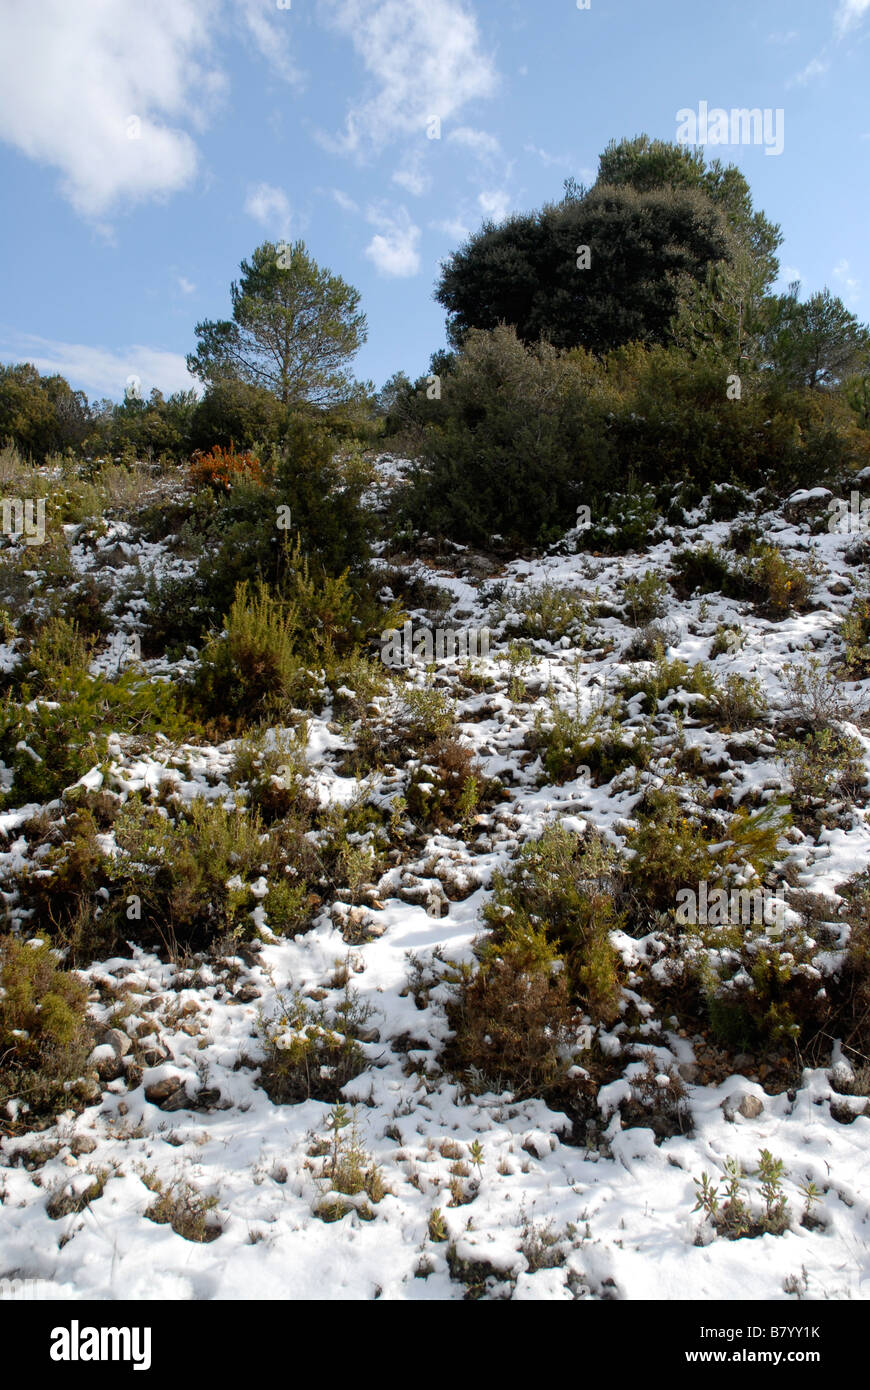 Mediterranean winter landscape with snow, near Alcala de la Jovada, Vall d'Alcala, Marina Alta, Alicante Province, Spain Stock Photo